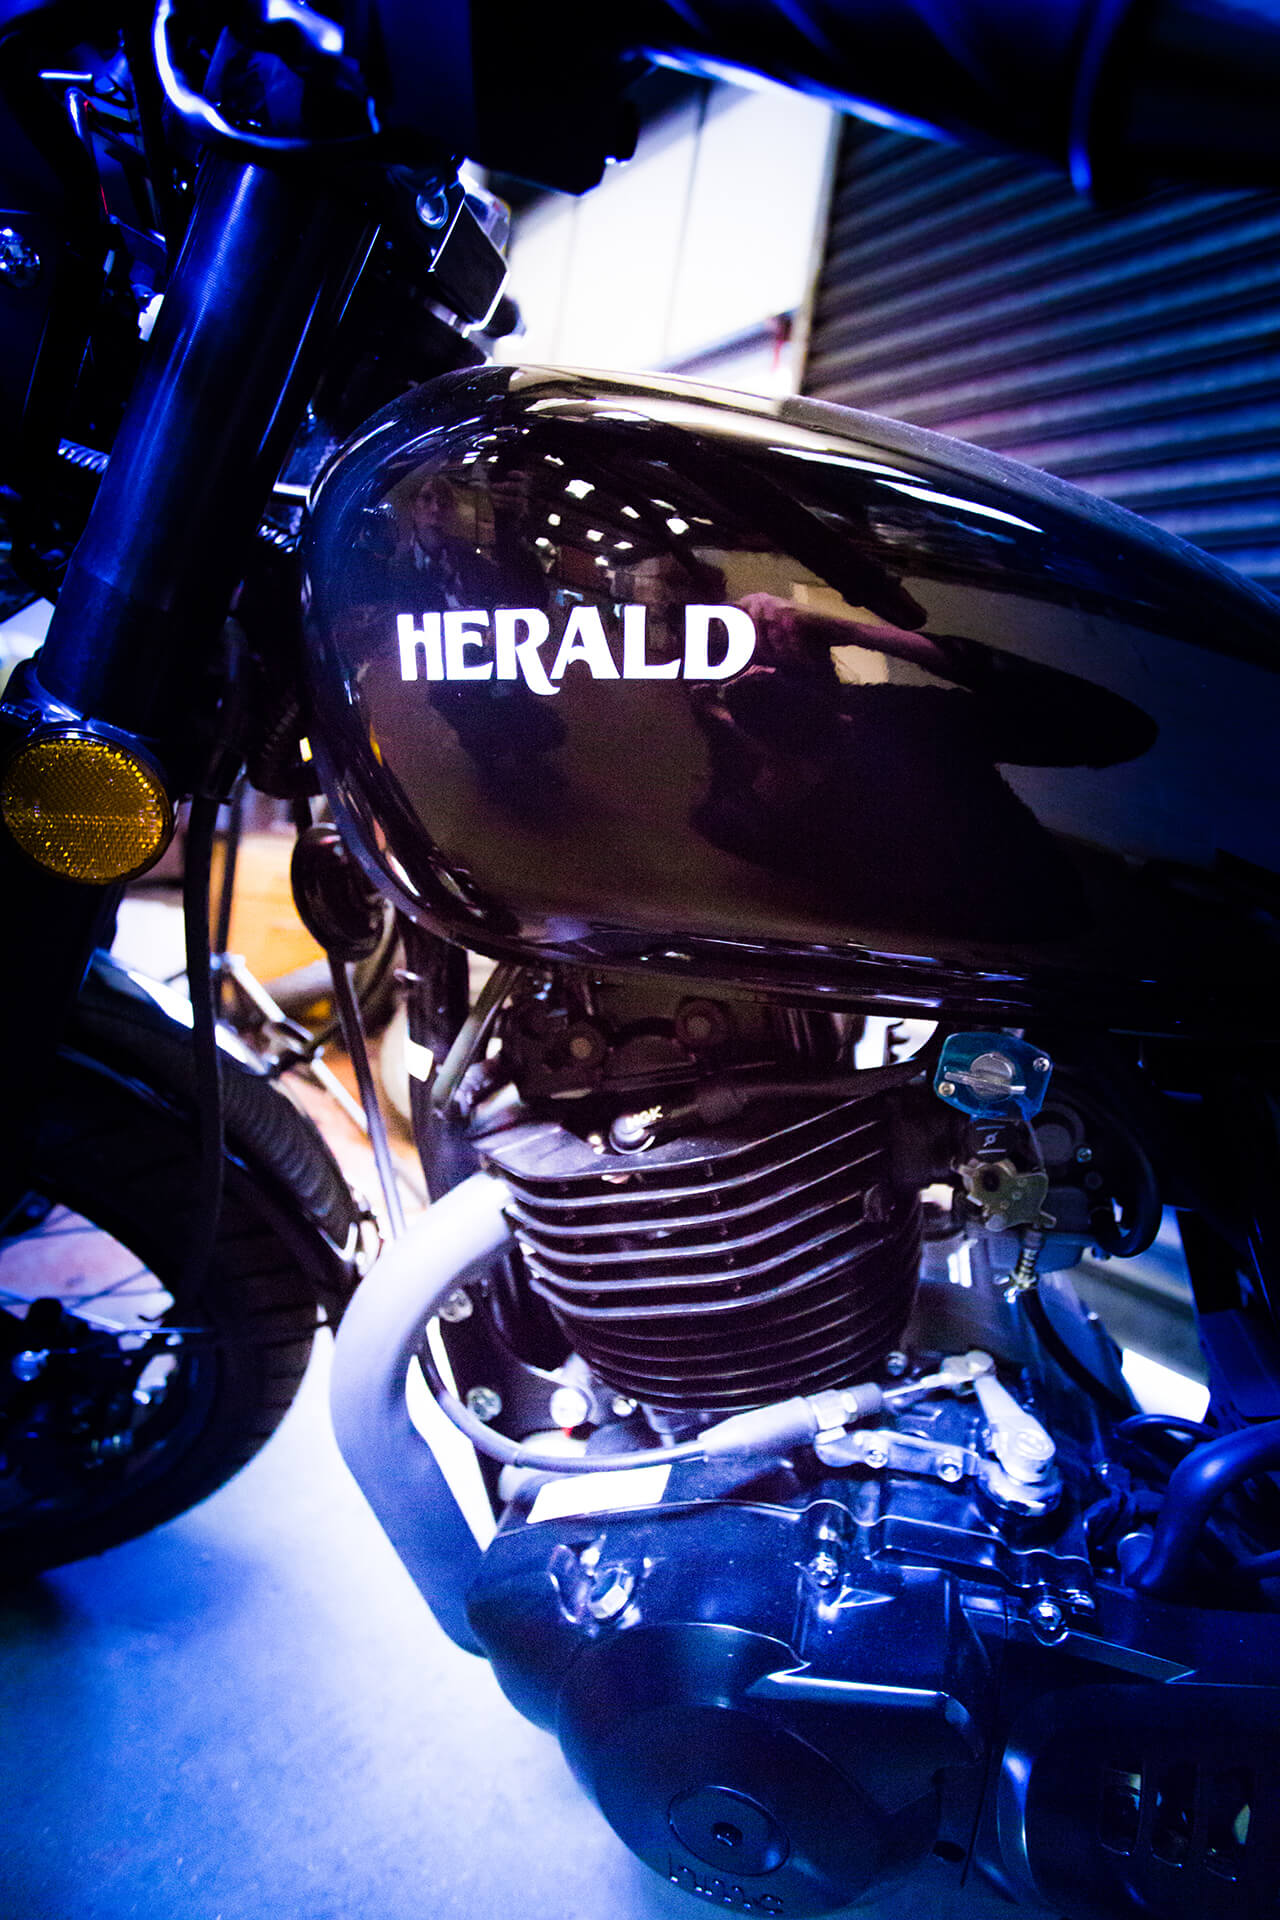 Herald motorcycles